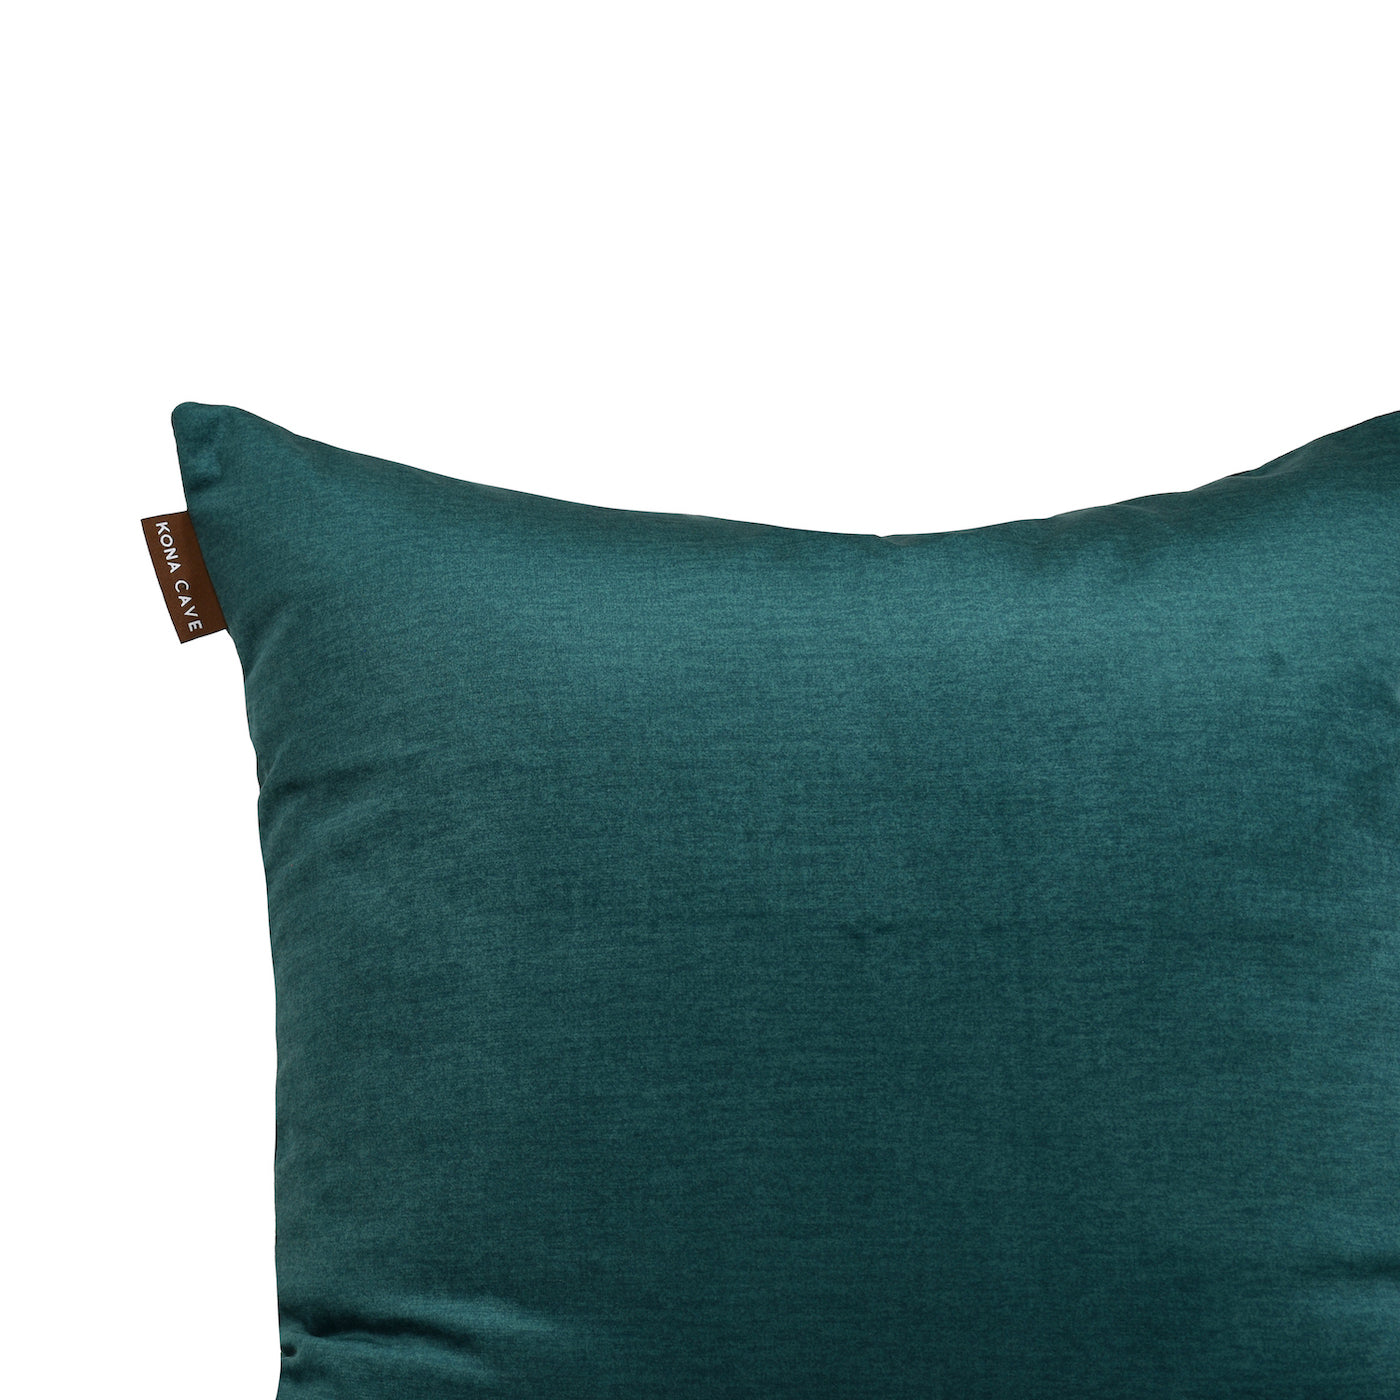  KONA CAVE® Emerald Green Velvet Pillow cover for 50 x 50cm pillow cushions. Washable velvet pillow cover